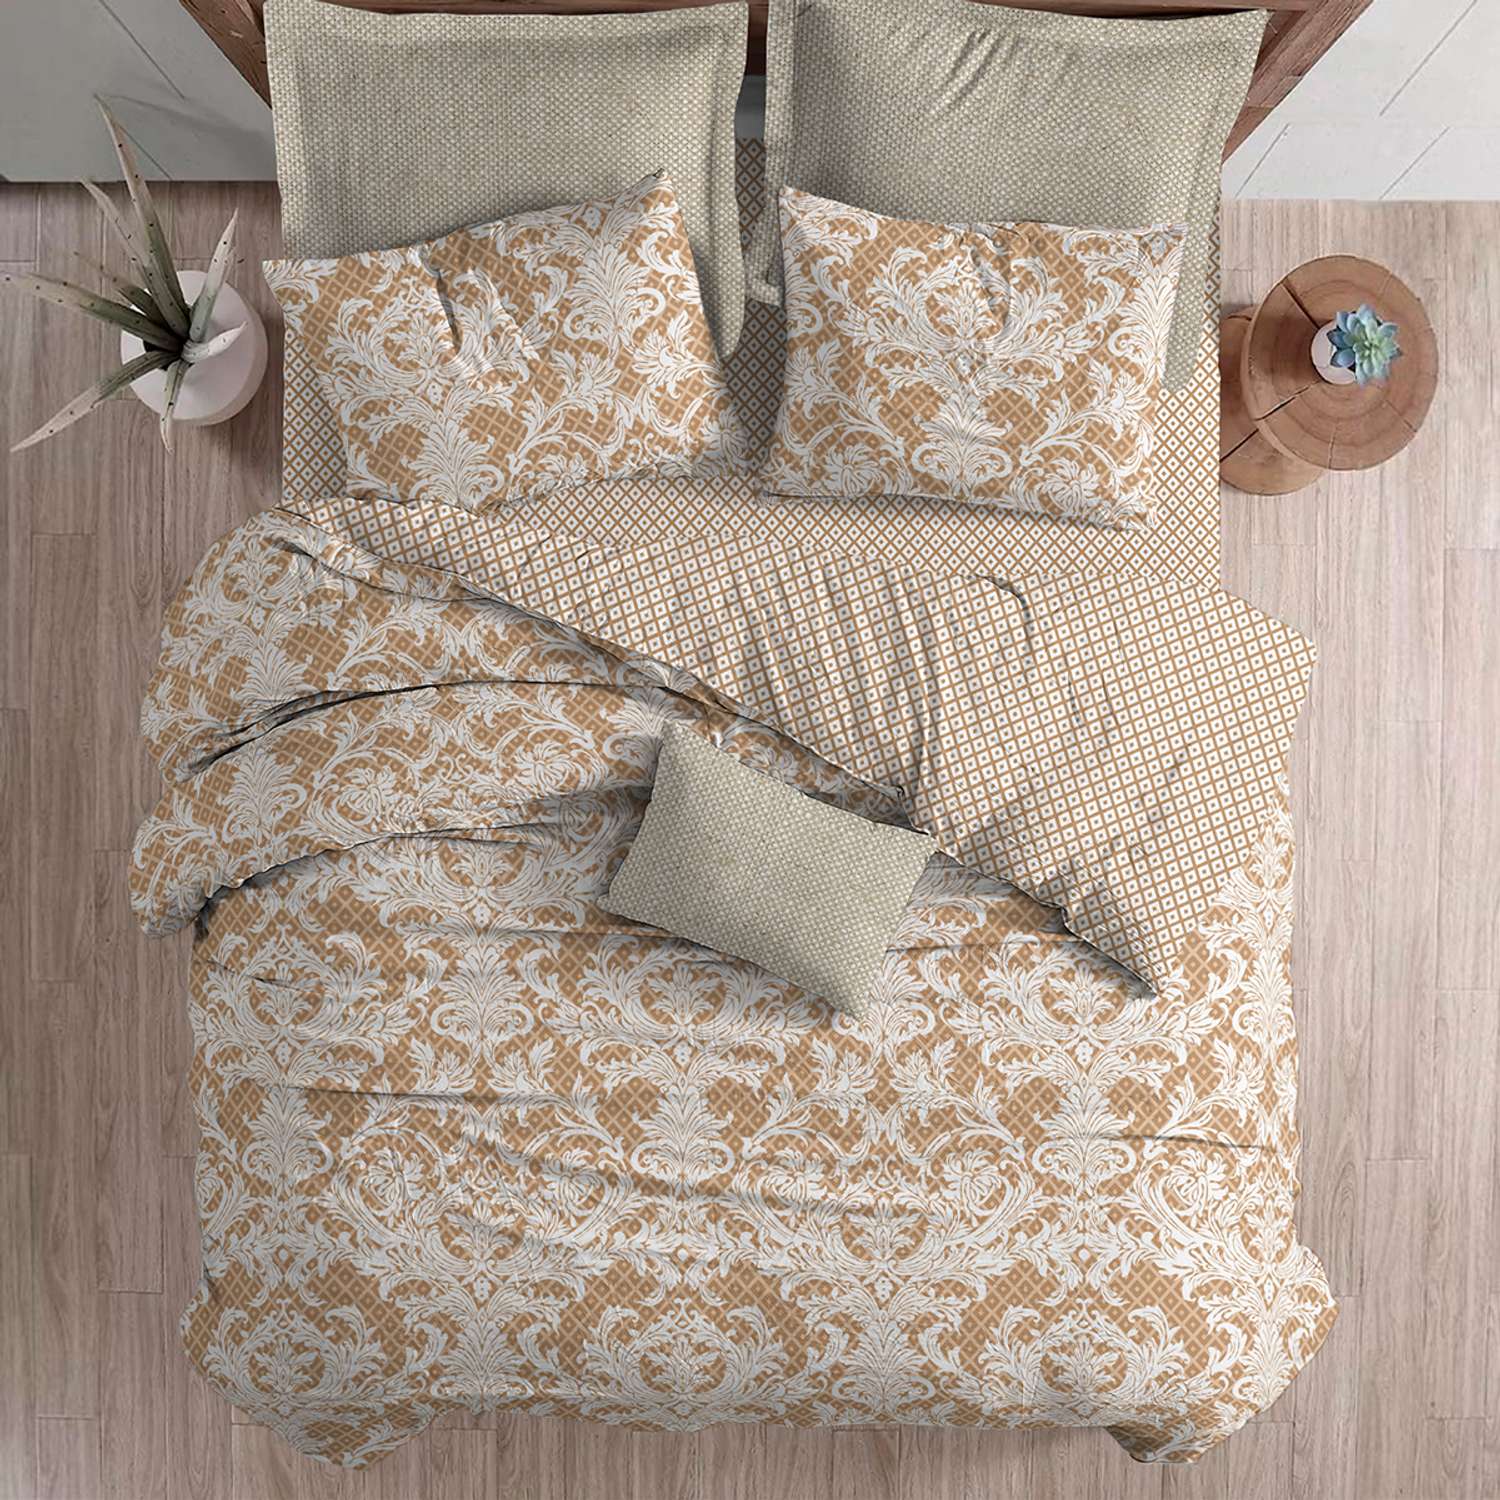 Комплект постельного белья lagom Бруа 1.5-спальный наволочки 70х70 - фото 9